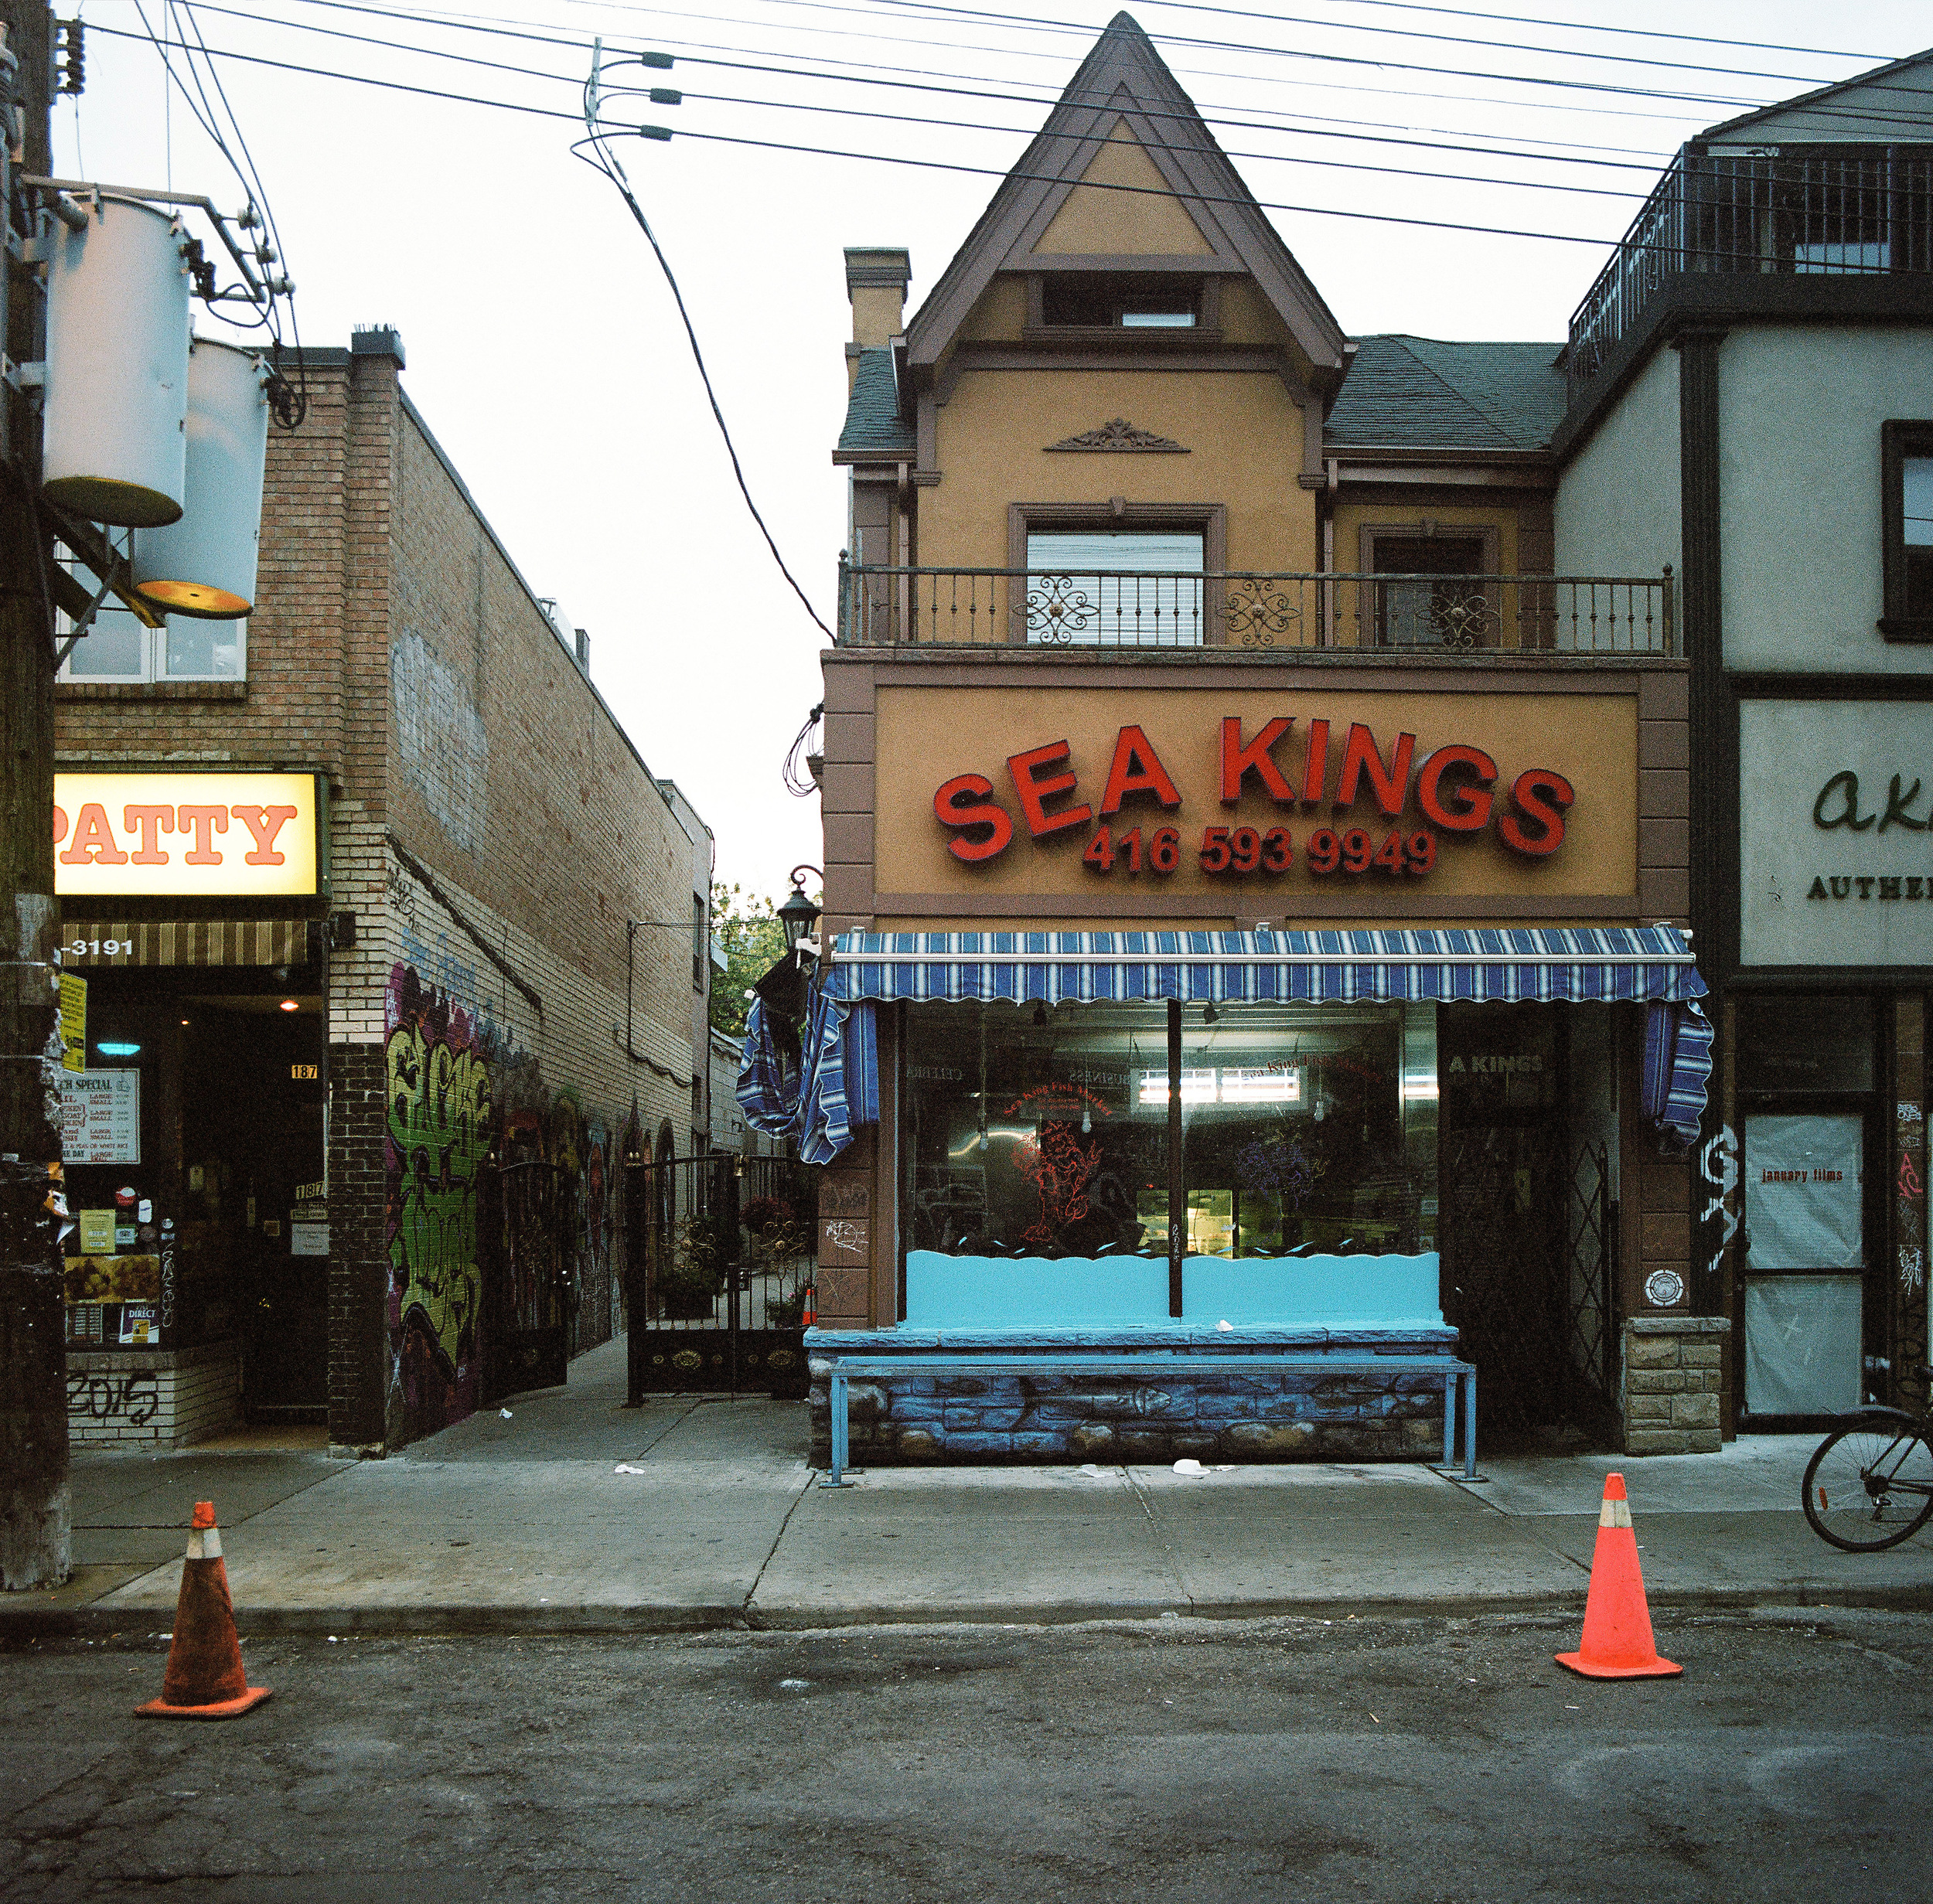  St Andrew Street,&nbsp; Toronto, Ontario, Canada, 2015 